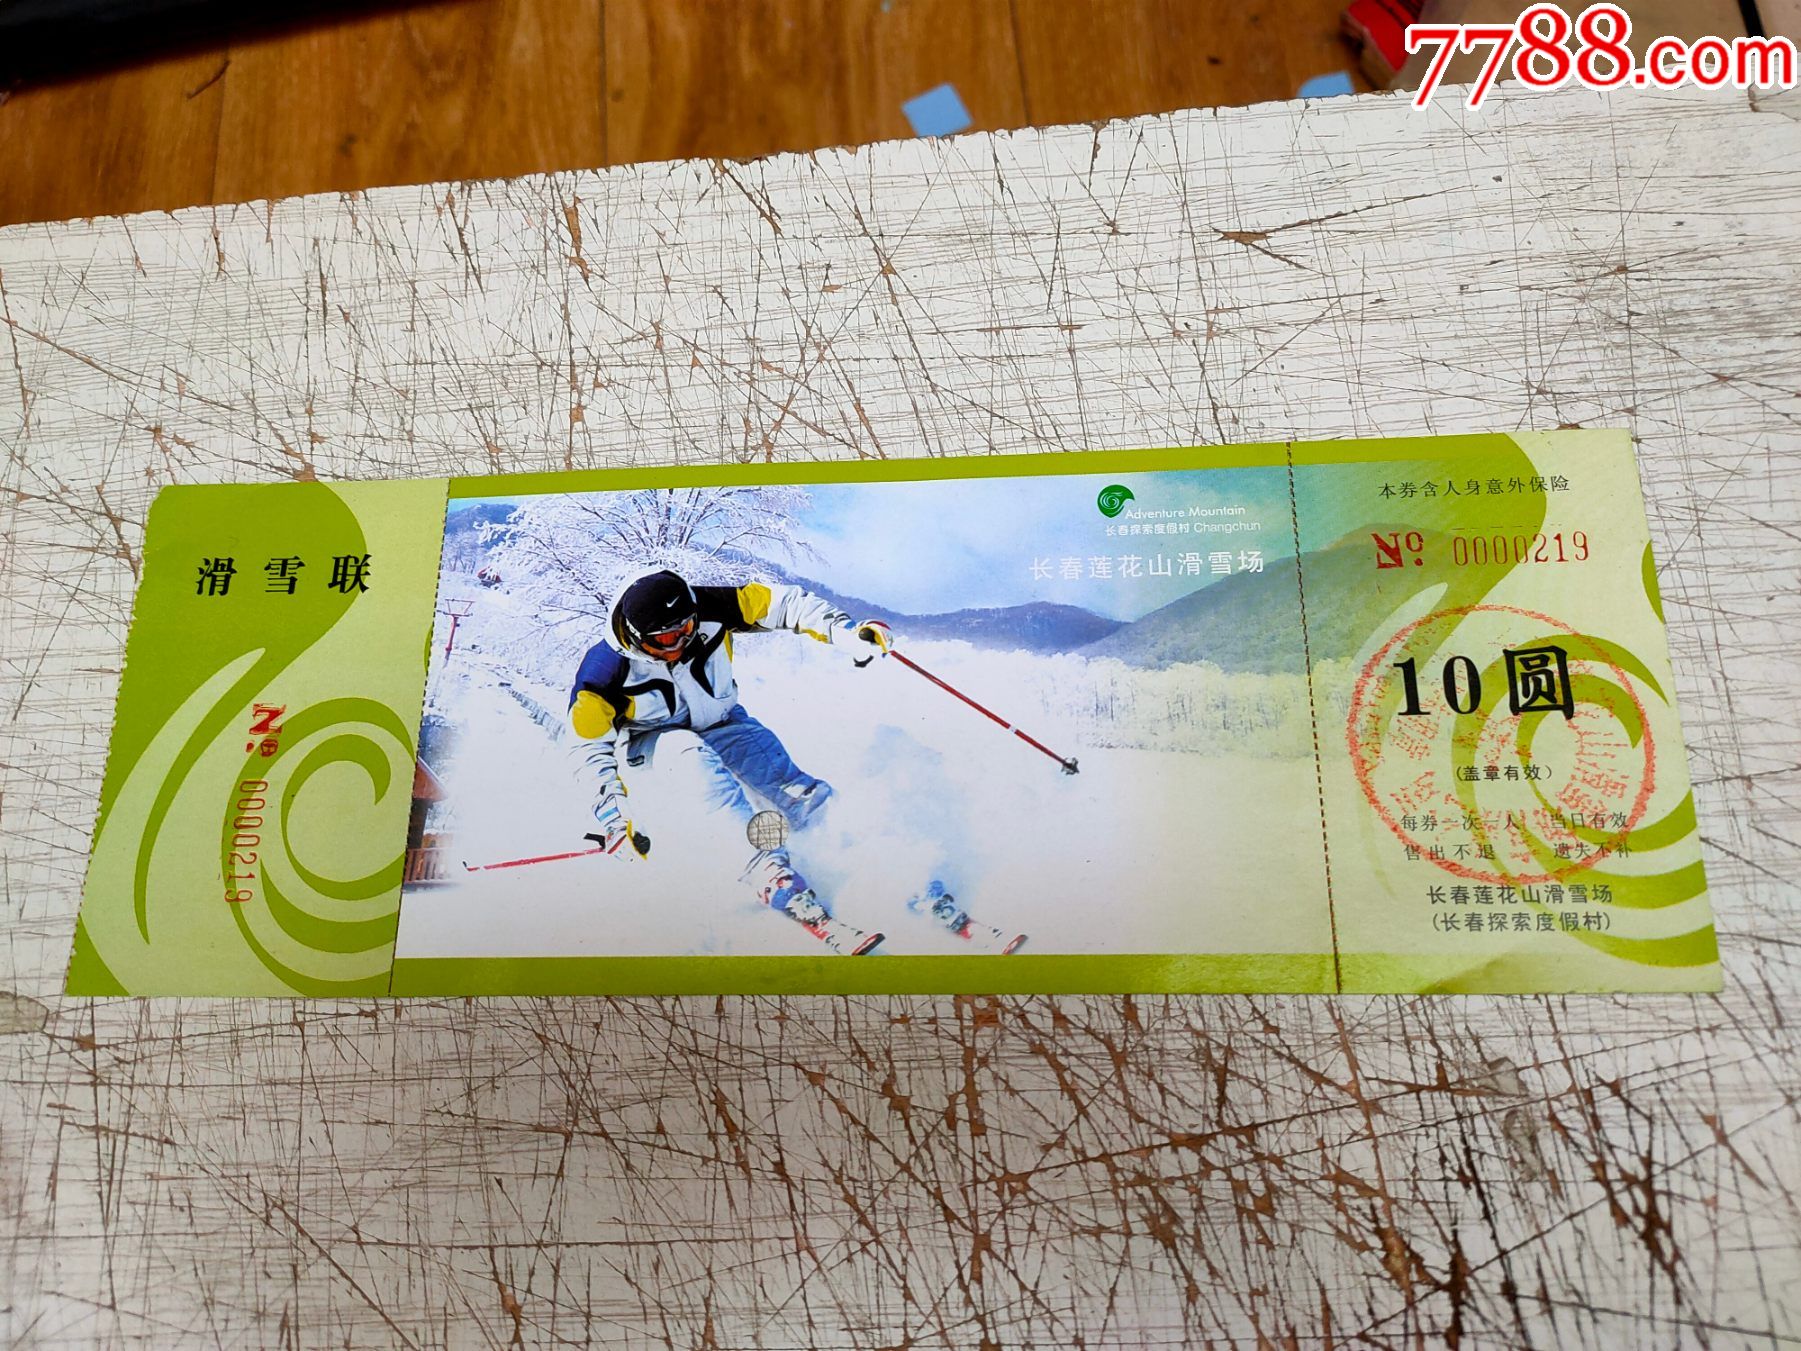 长春莲花山滑雪场【10元券